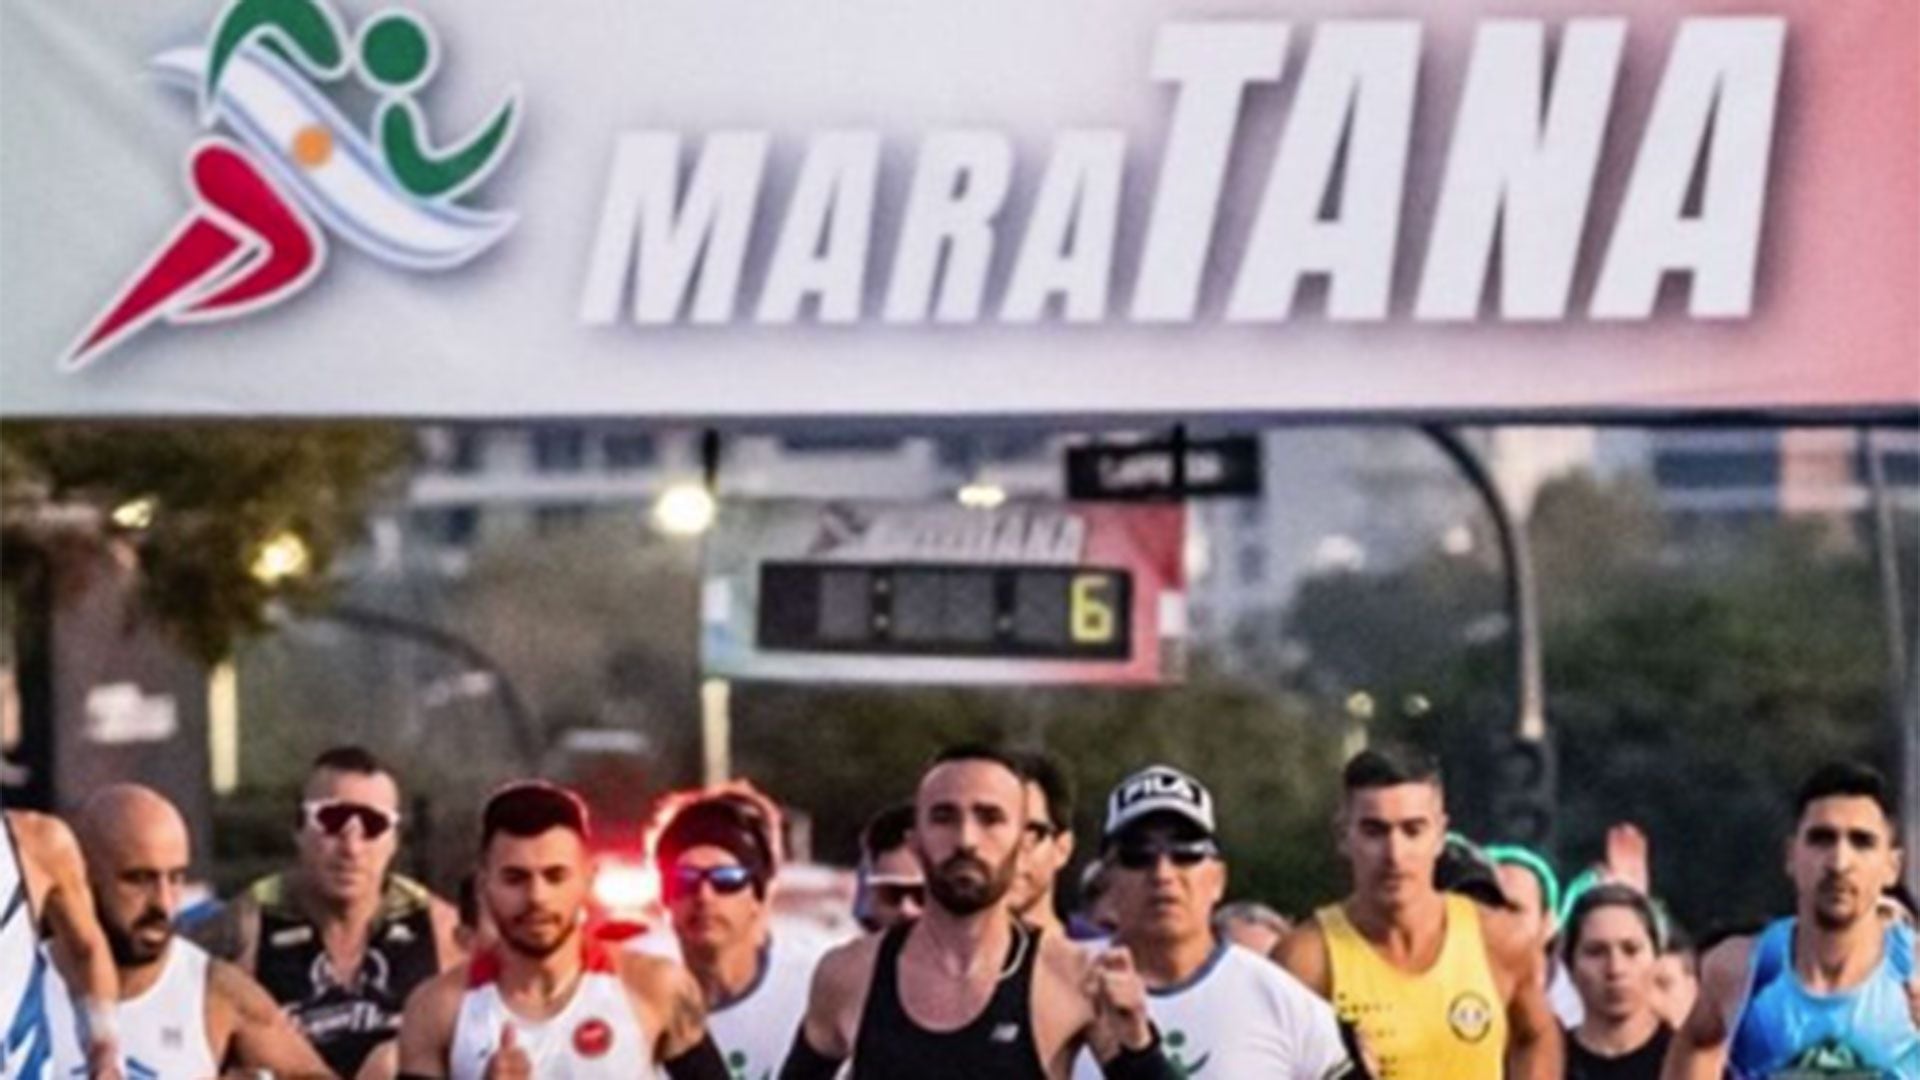 Llega una nueva edición de MaraTANA, la maratón que celebra la identidad italiana en Argentina